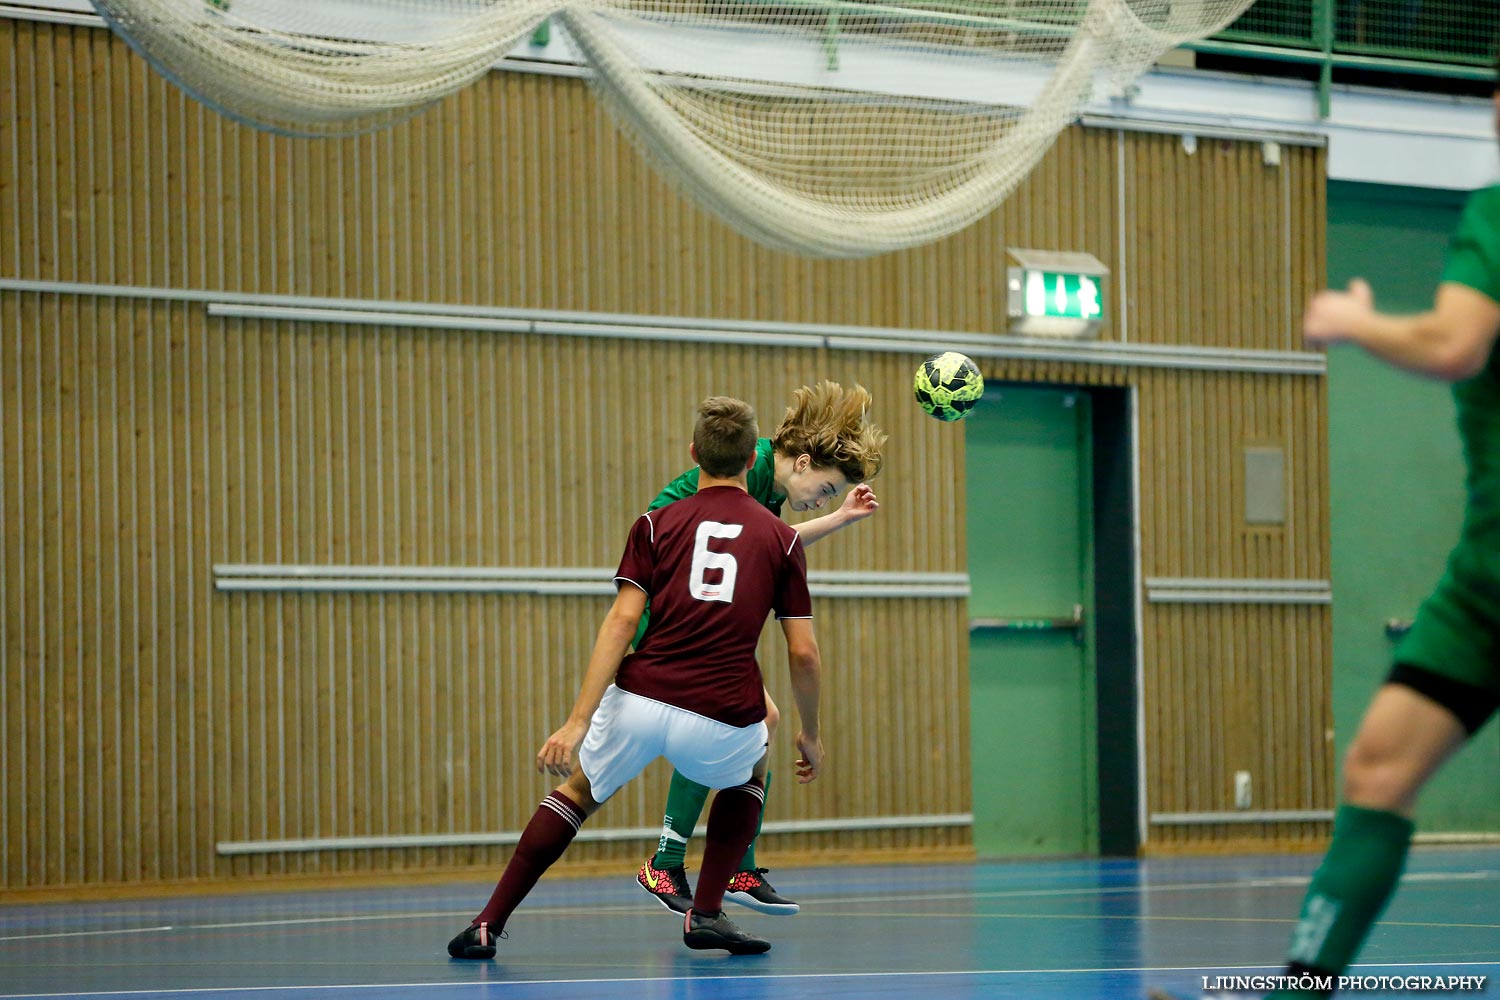 Skövde Futsalcup Herrjuniorer Näsets SK 1-Våmbs IF,herr,Arena Skövde,Skövde,Sverige,Skövde Futsalcup 2014,Futsal,2014,98895